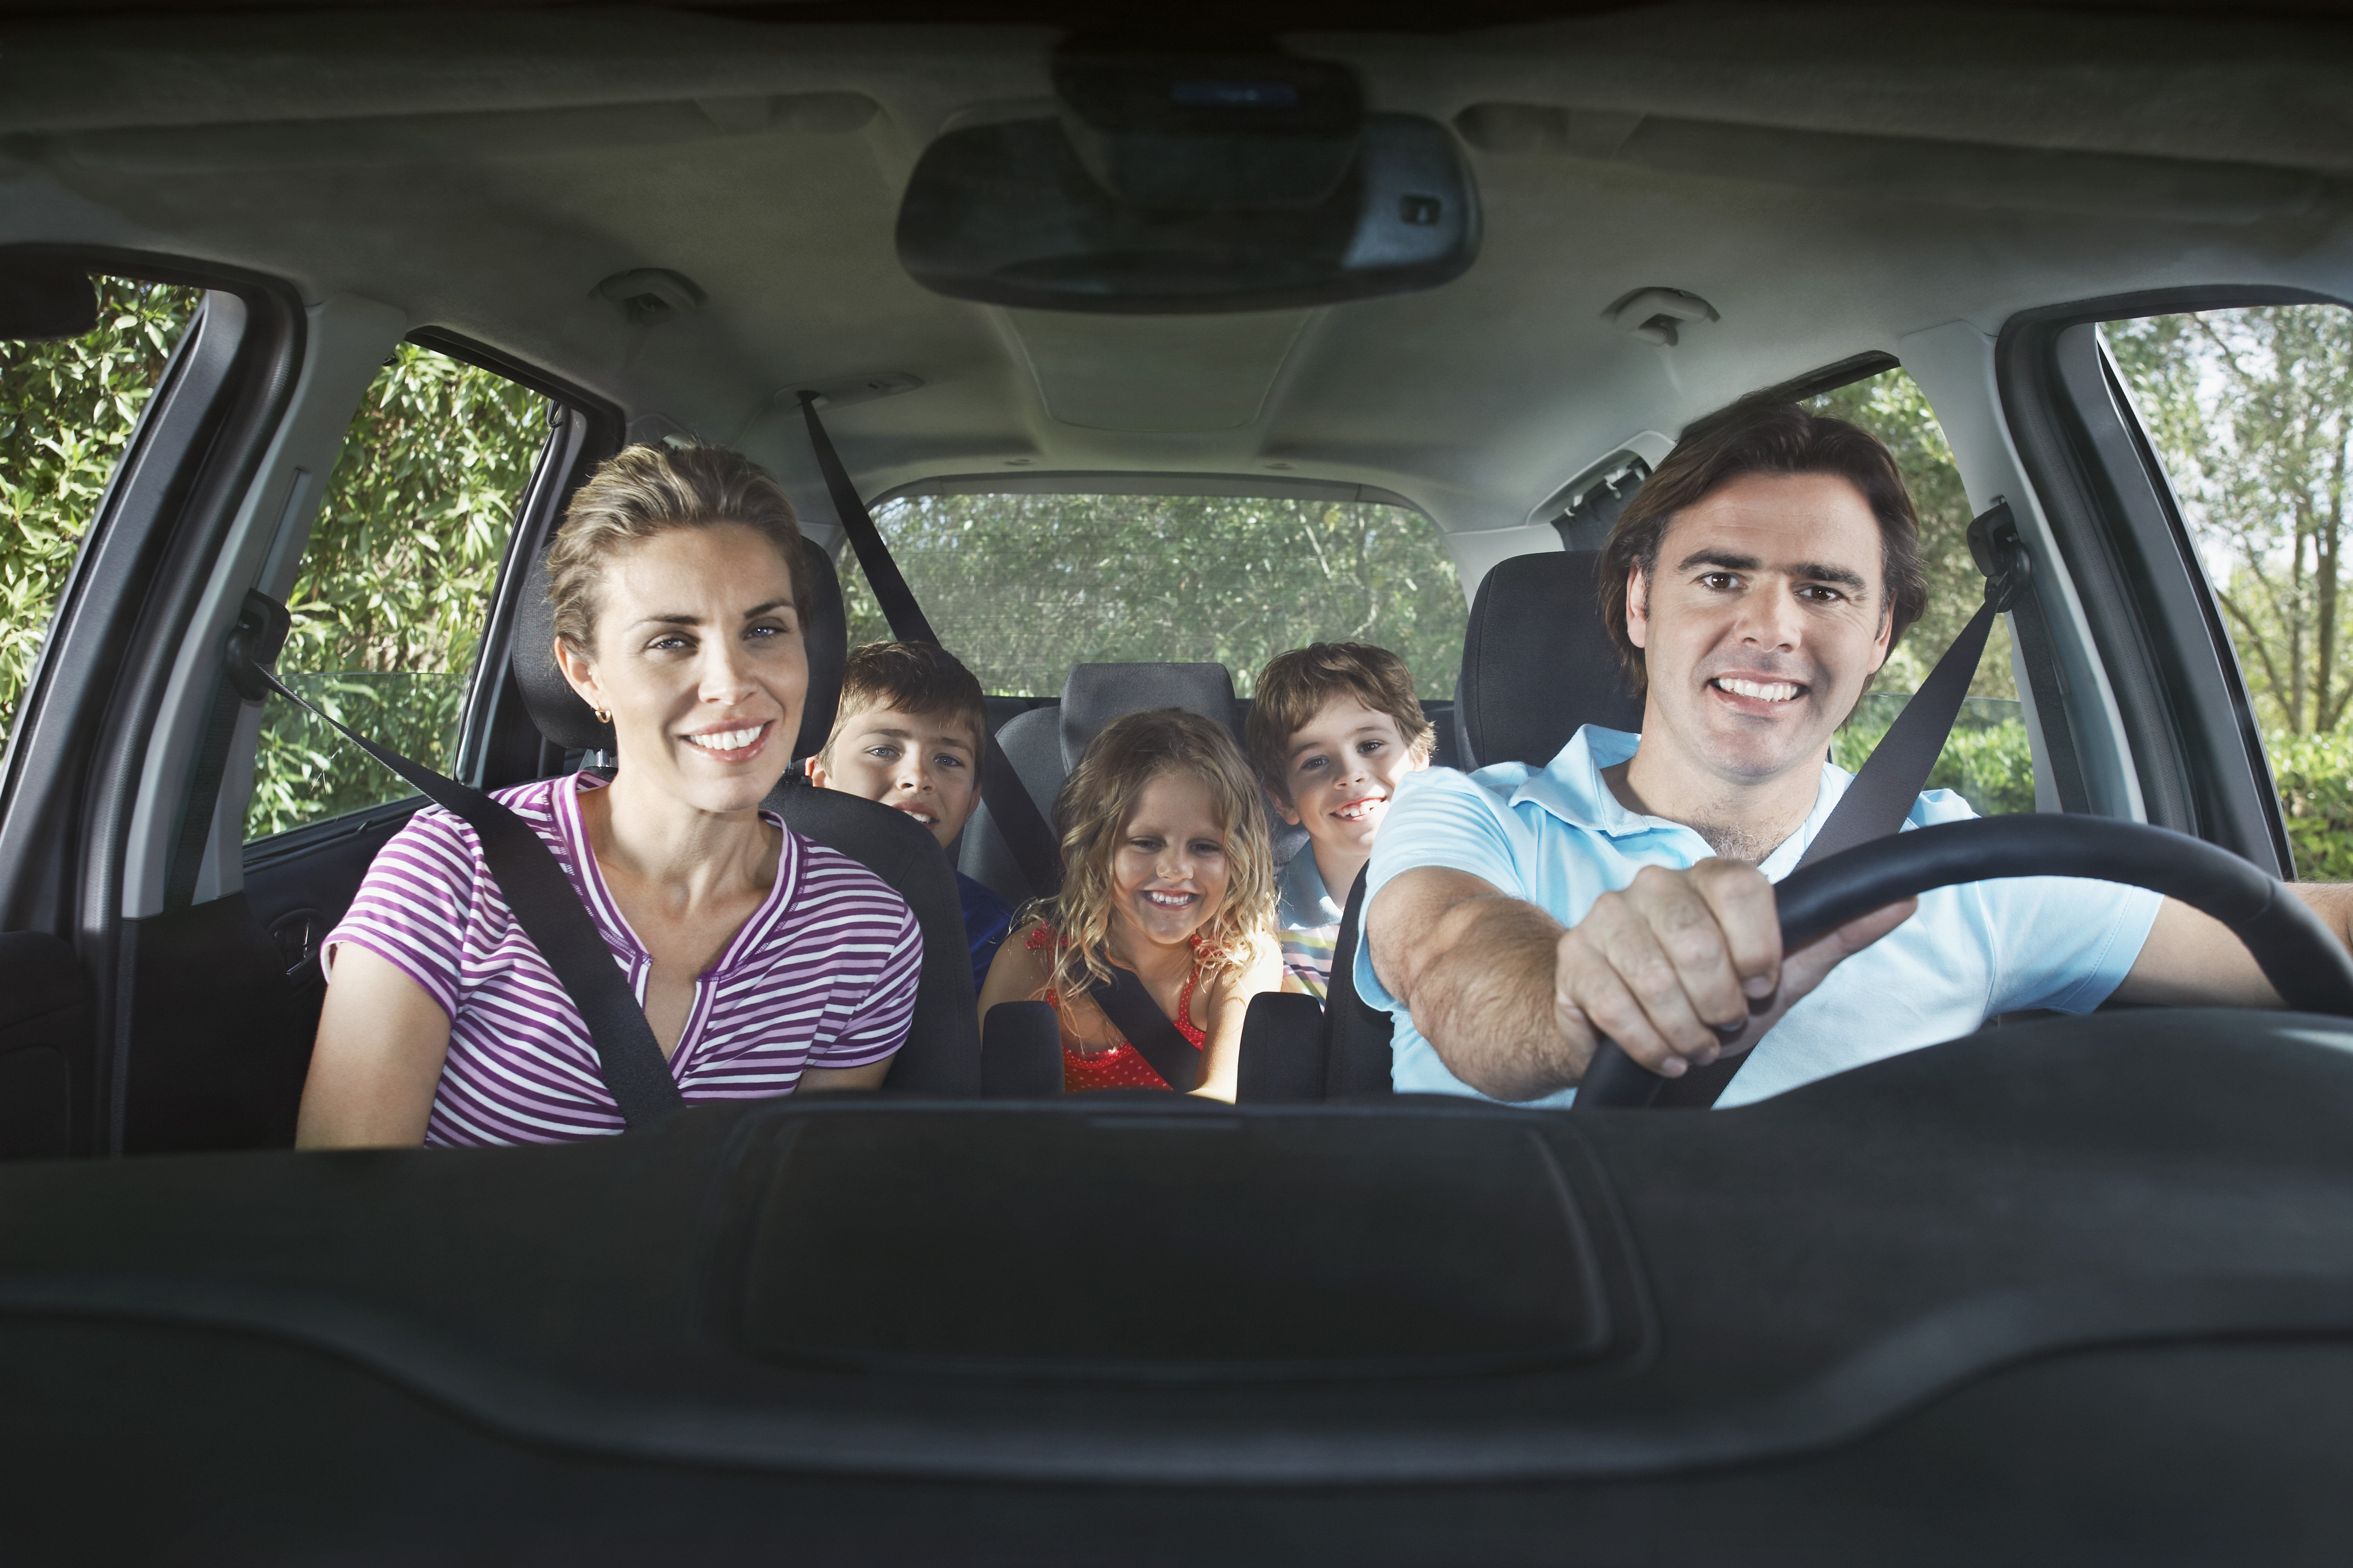 My mums car. Человек едет в машине. Счастливая семья в автомобиле. Люди едут в автомобиле. Семья едет в машине.